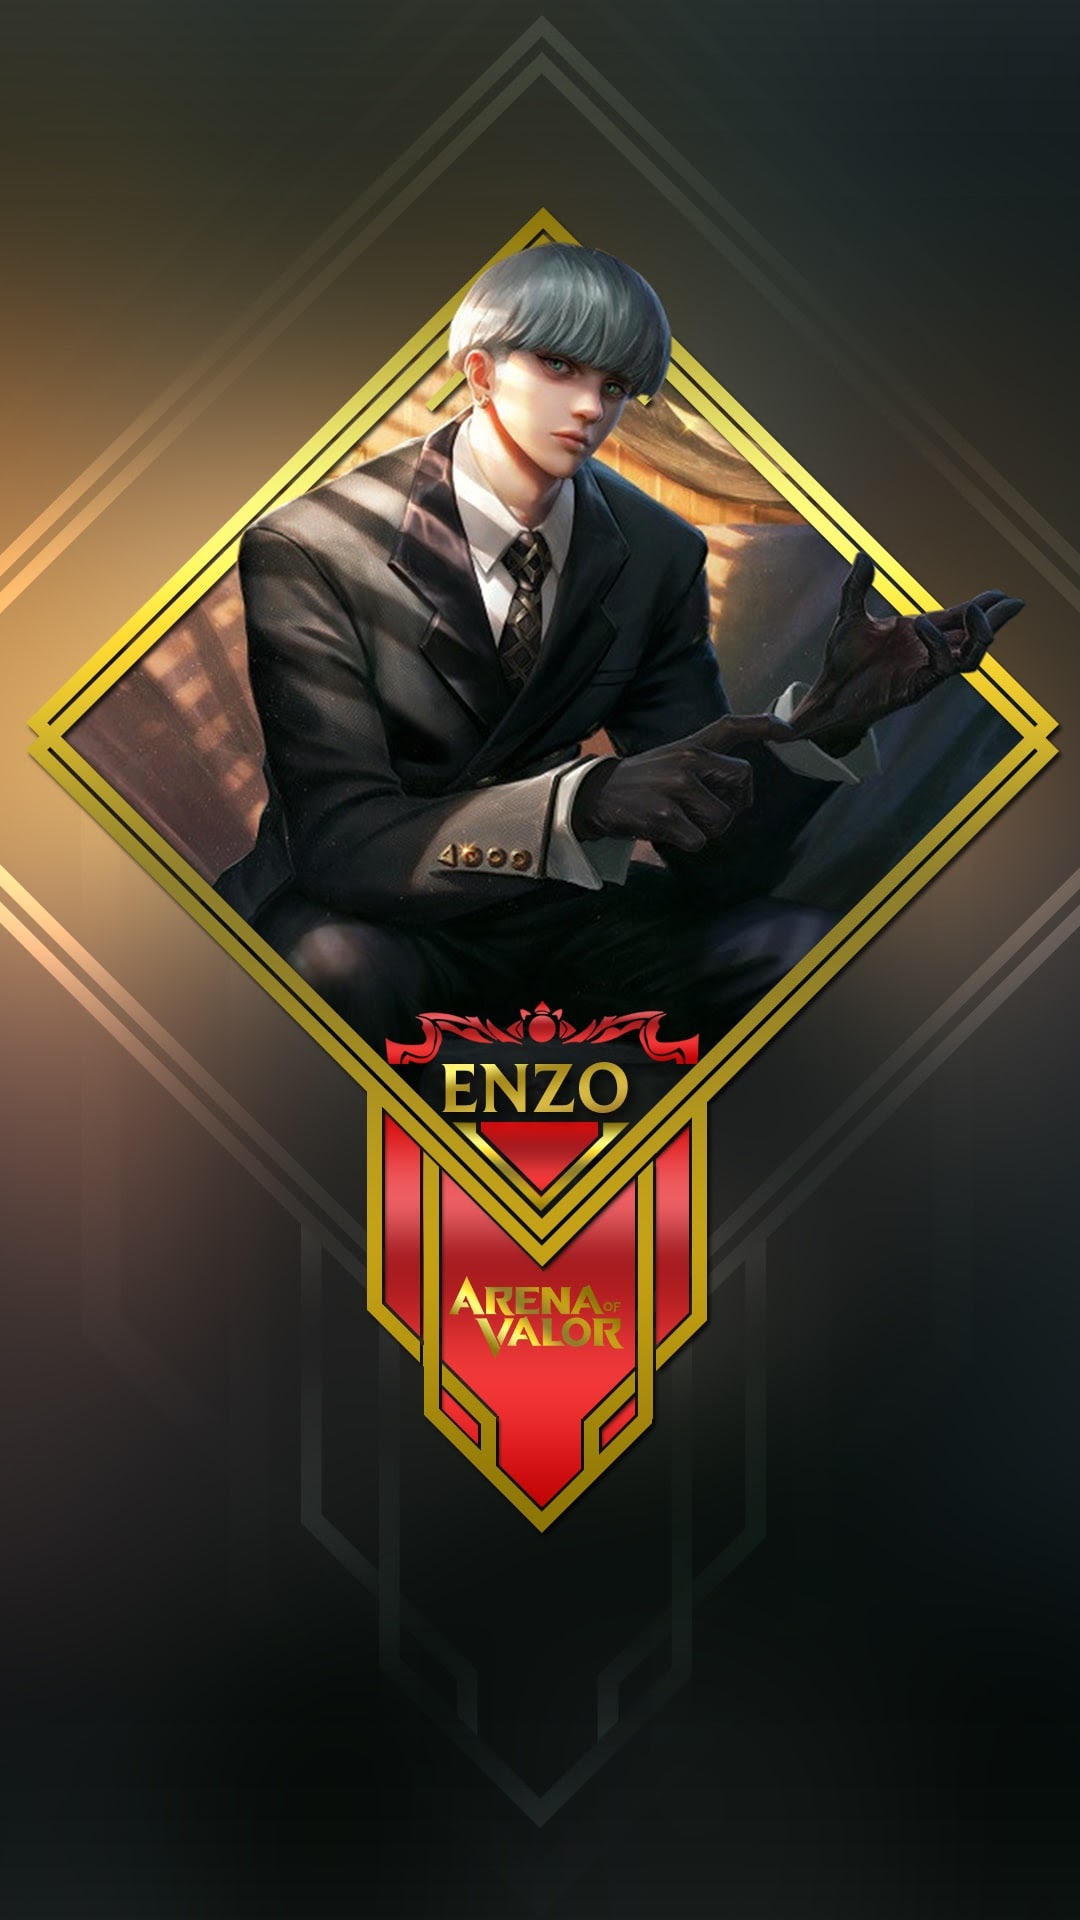 Hình nền Enzo cho điện thoại: Bạn muốn tùy biến điện thoại của mình để thể hiện đam mê và sự ưa thích của mình đến Tướng Enzo? Hình nền Enzo sẽ là sự lựa chọn hoàn hảo! Cùng với đó, bạn còn được thưởng thức hình ảnh đẹp mắt và tinh tế cho màn hình của mình!